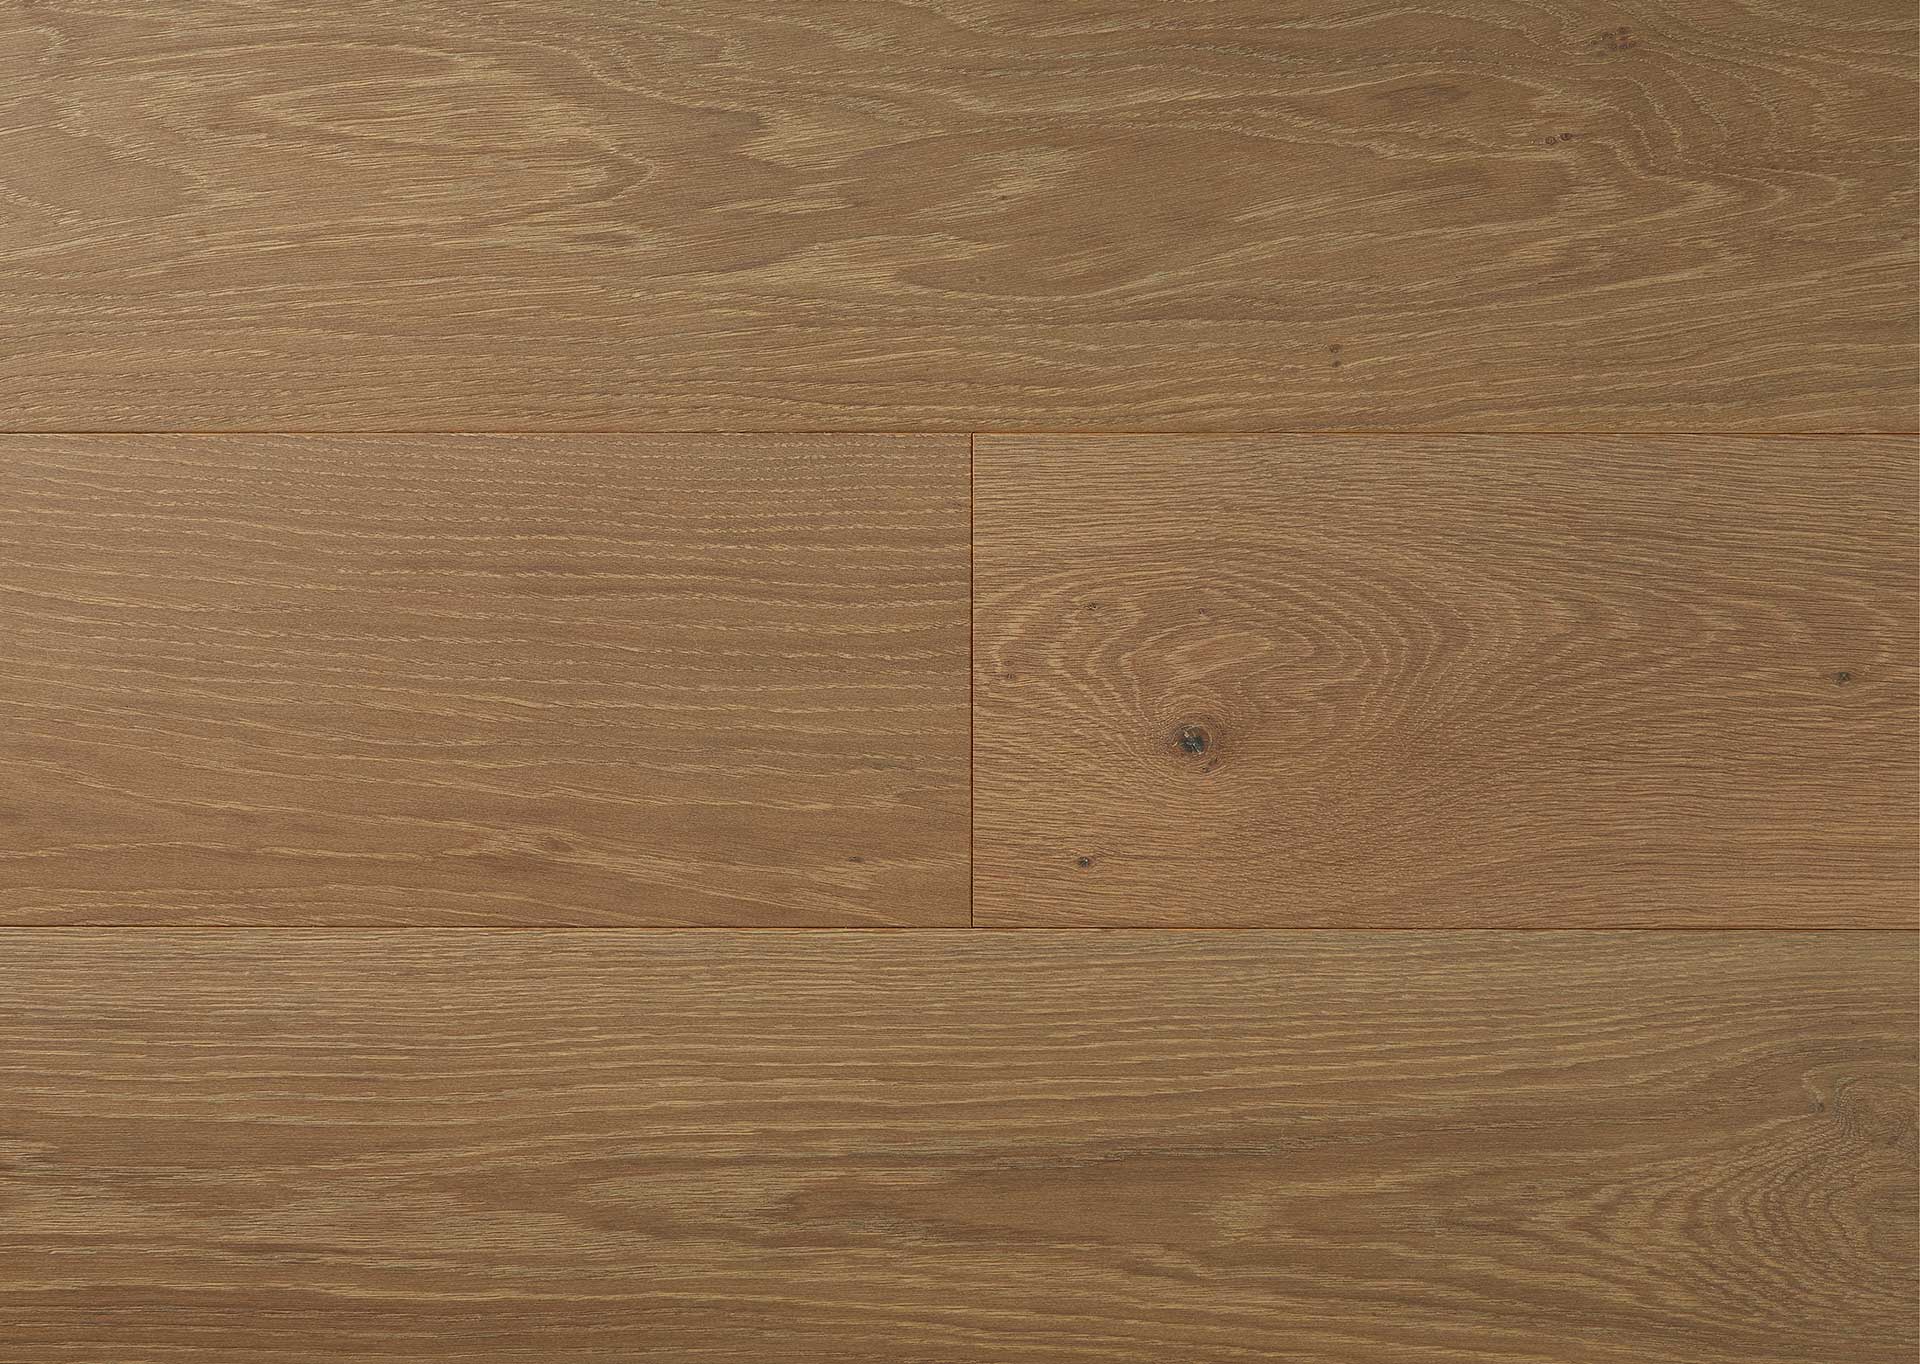 Hardwood Floorring Company Chicago Il Apex Wood Floors